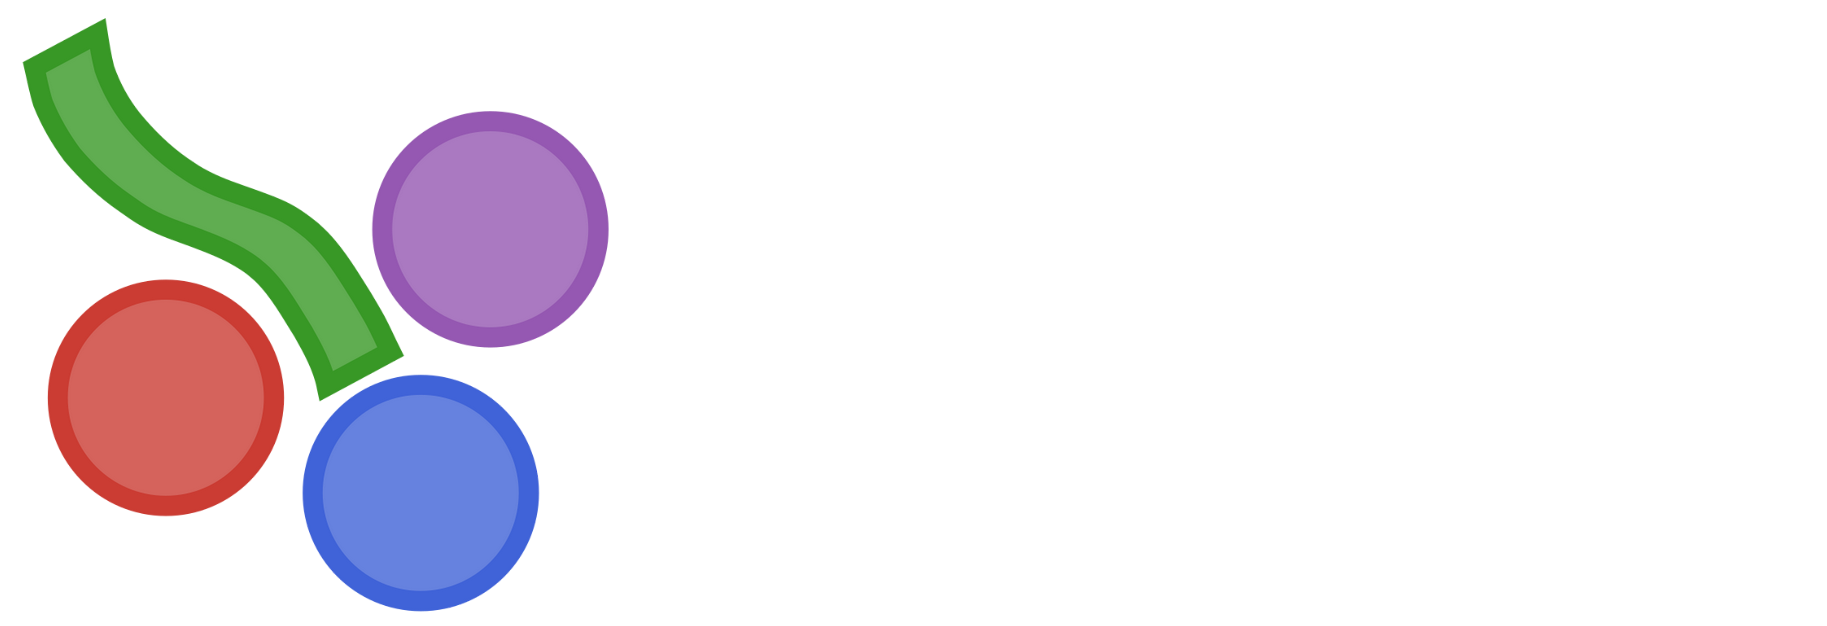 Dionysos logo